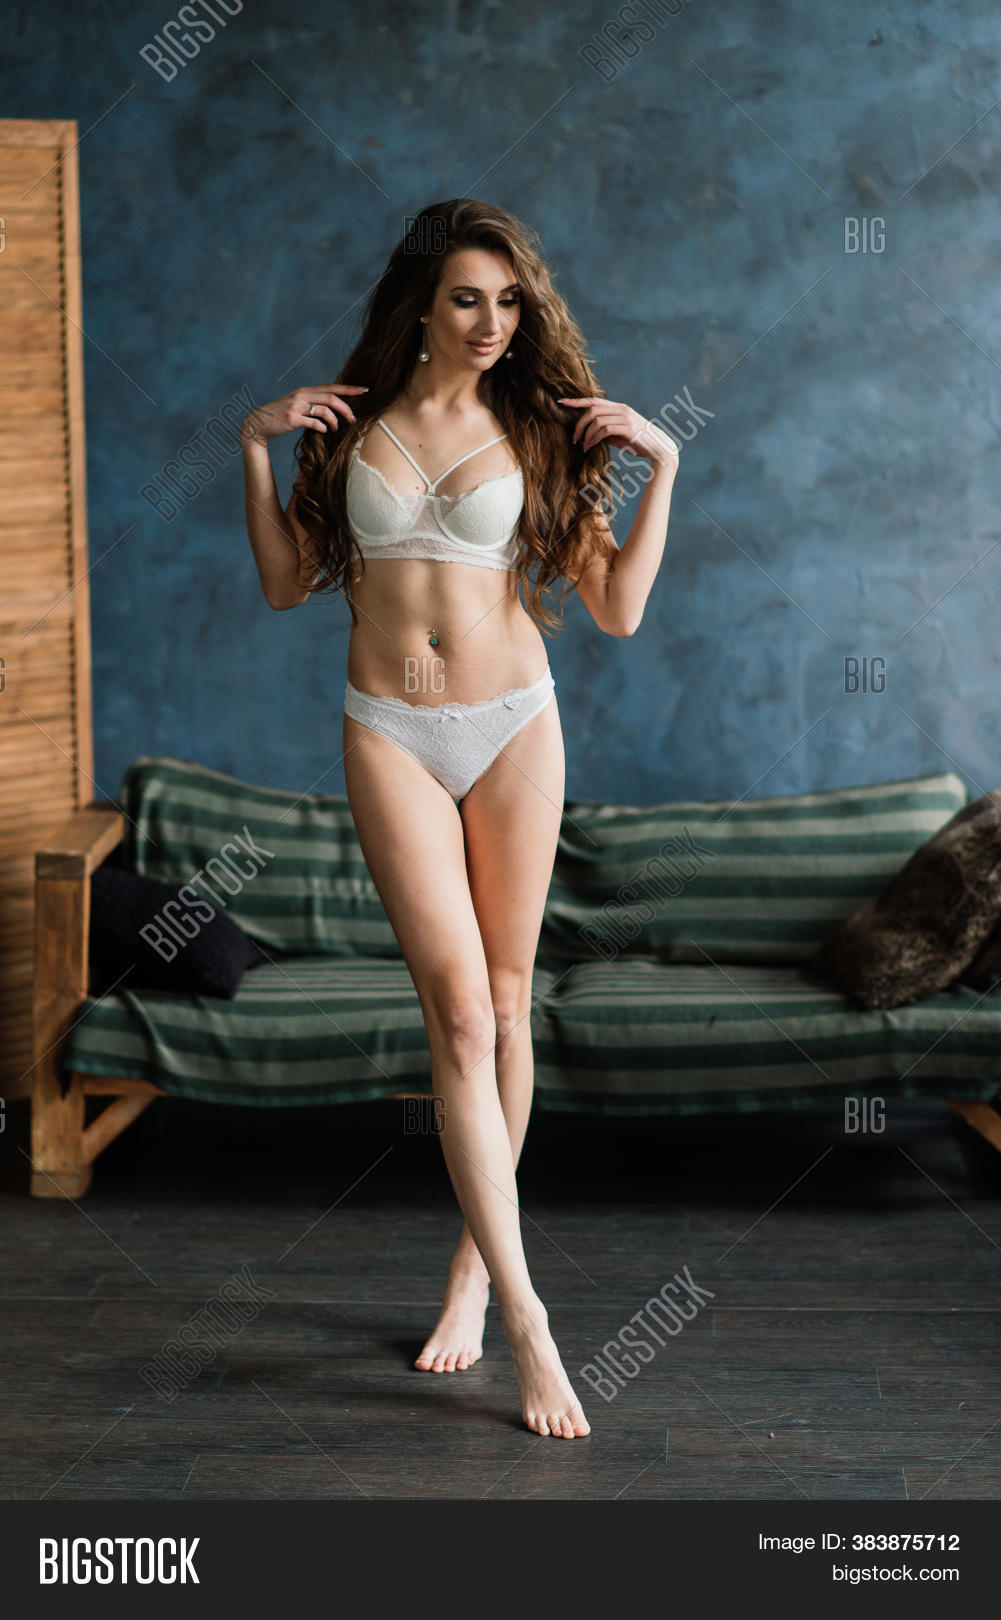 brett udy add big beautiful women in lingerie photo